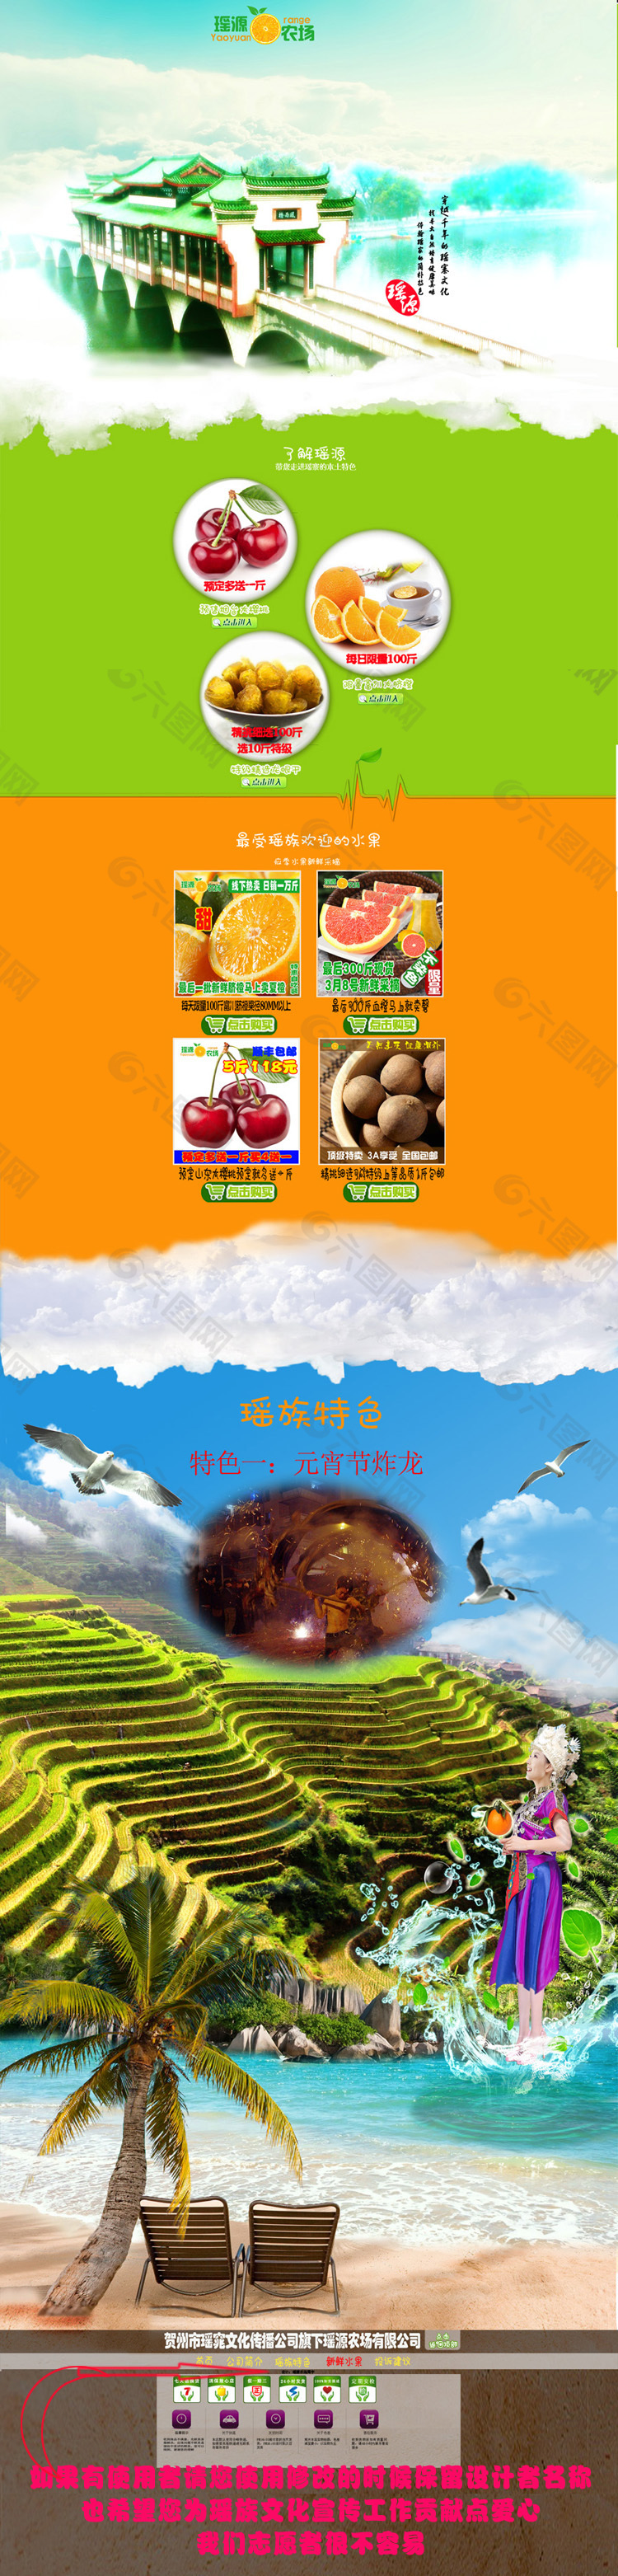 食品首页模版瑶族文化宣传模版